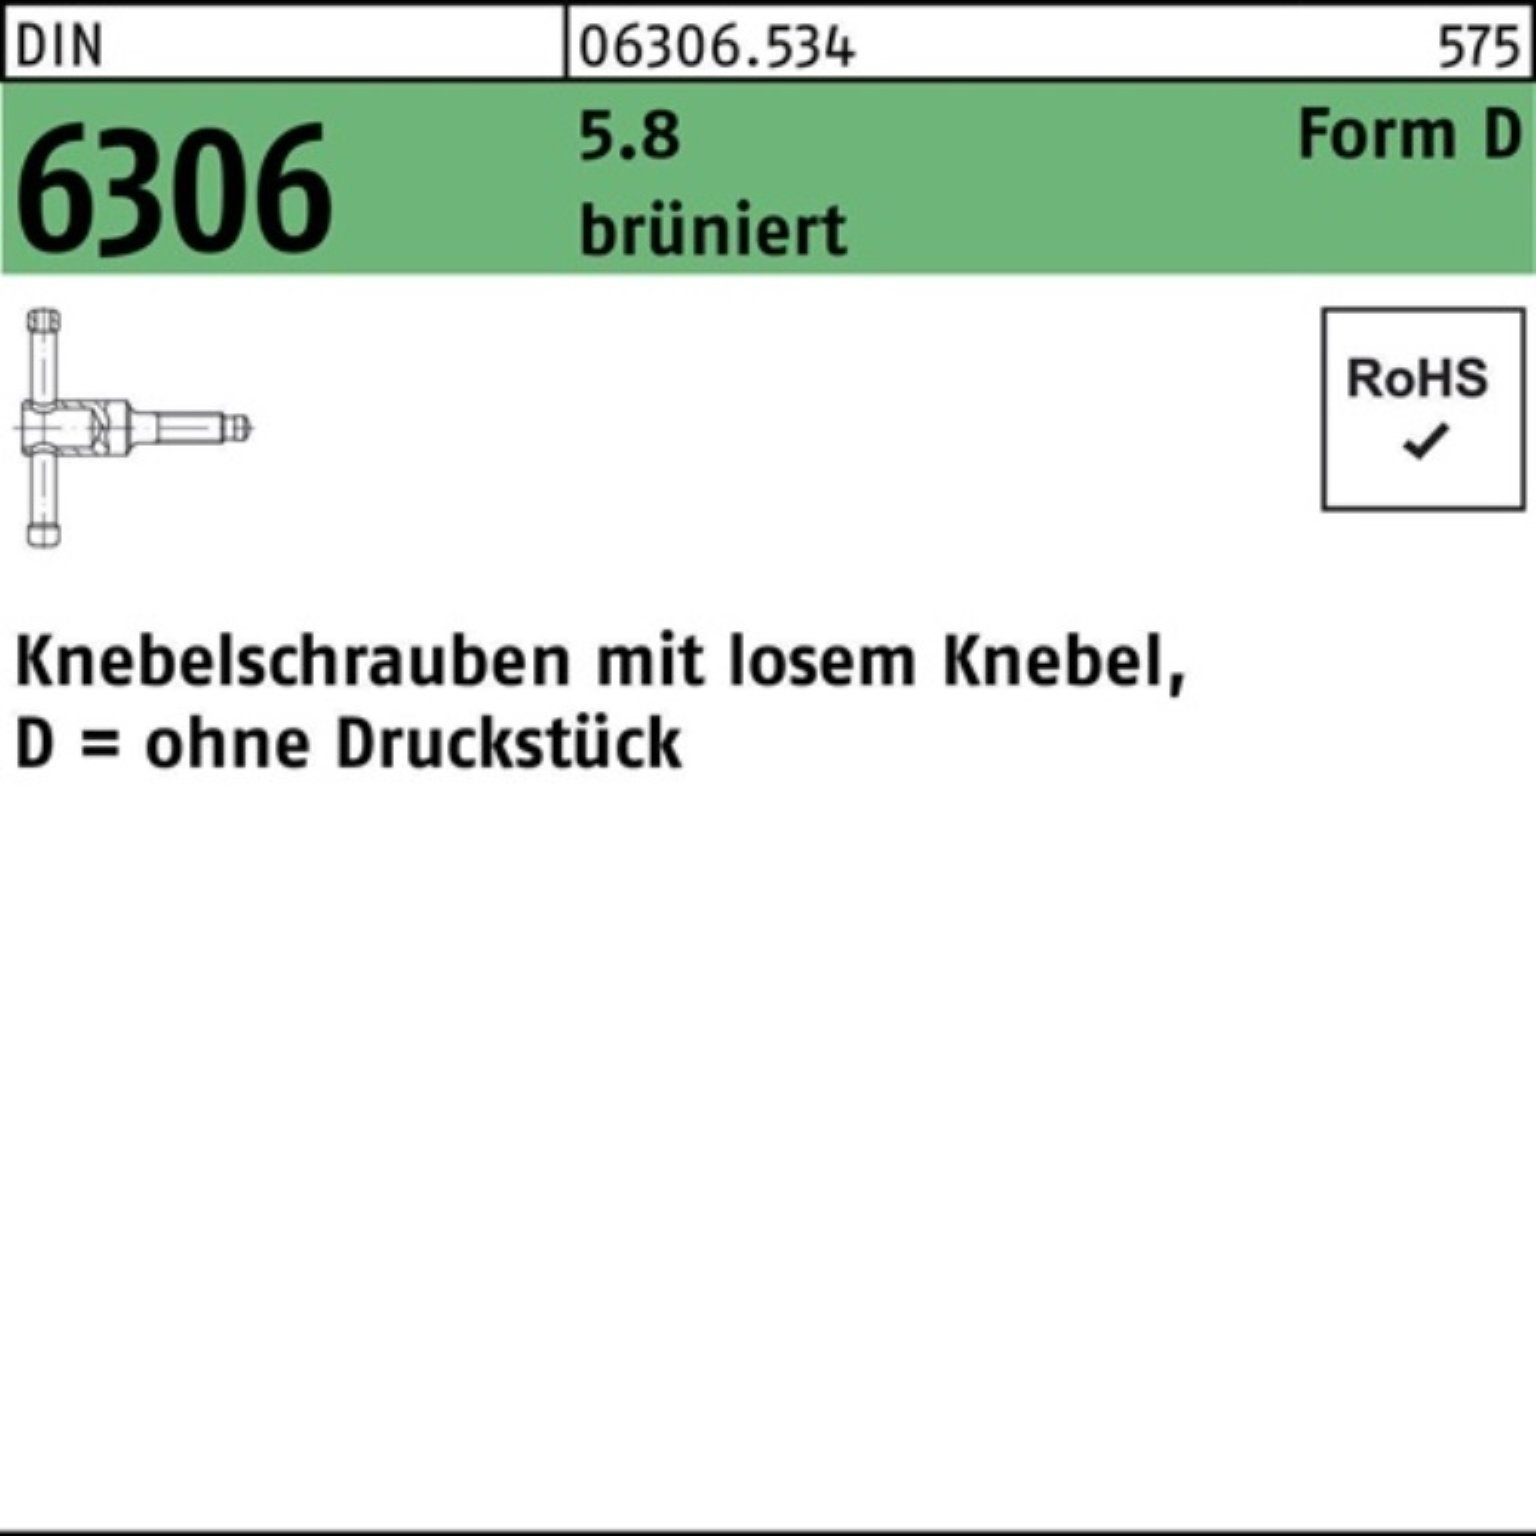 Reyher Schraube 100er Pack Knebelschraube DIN 6306 losen Knebel DM 16x 70 5.8 brünier